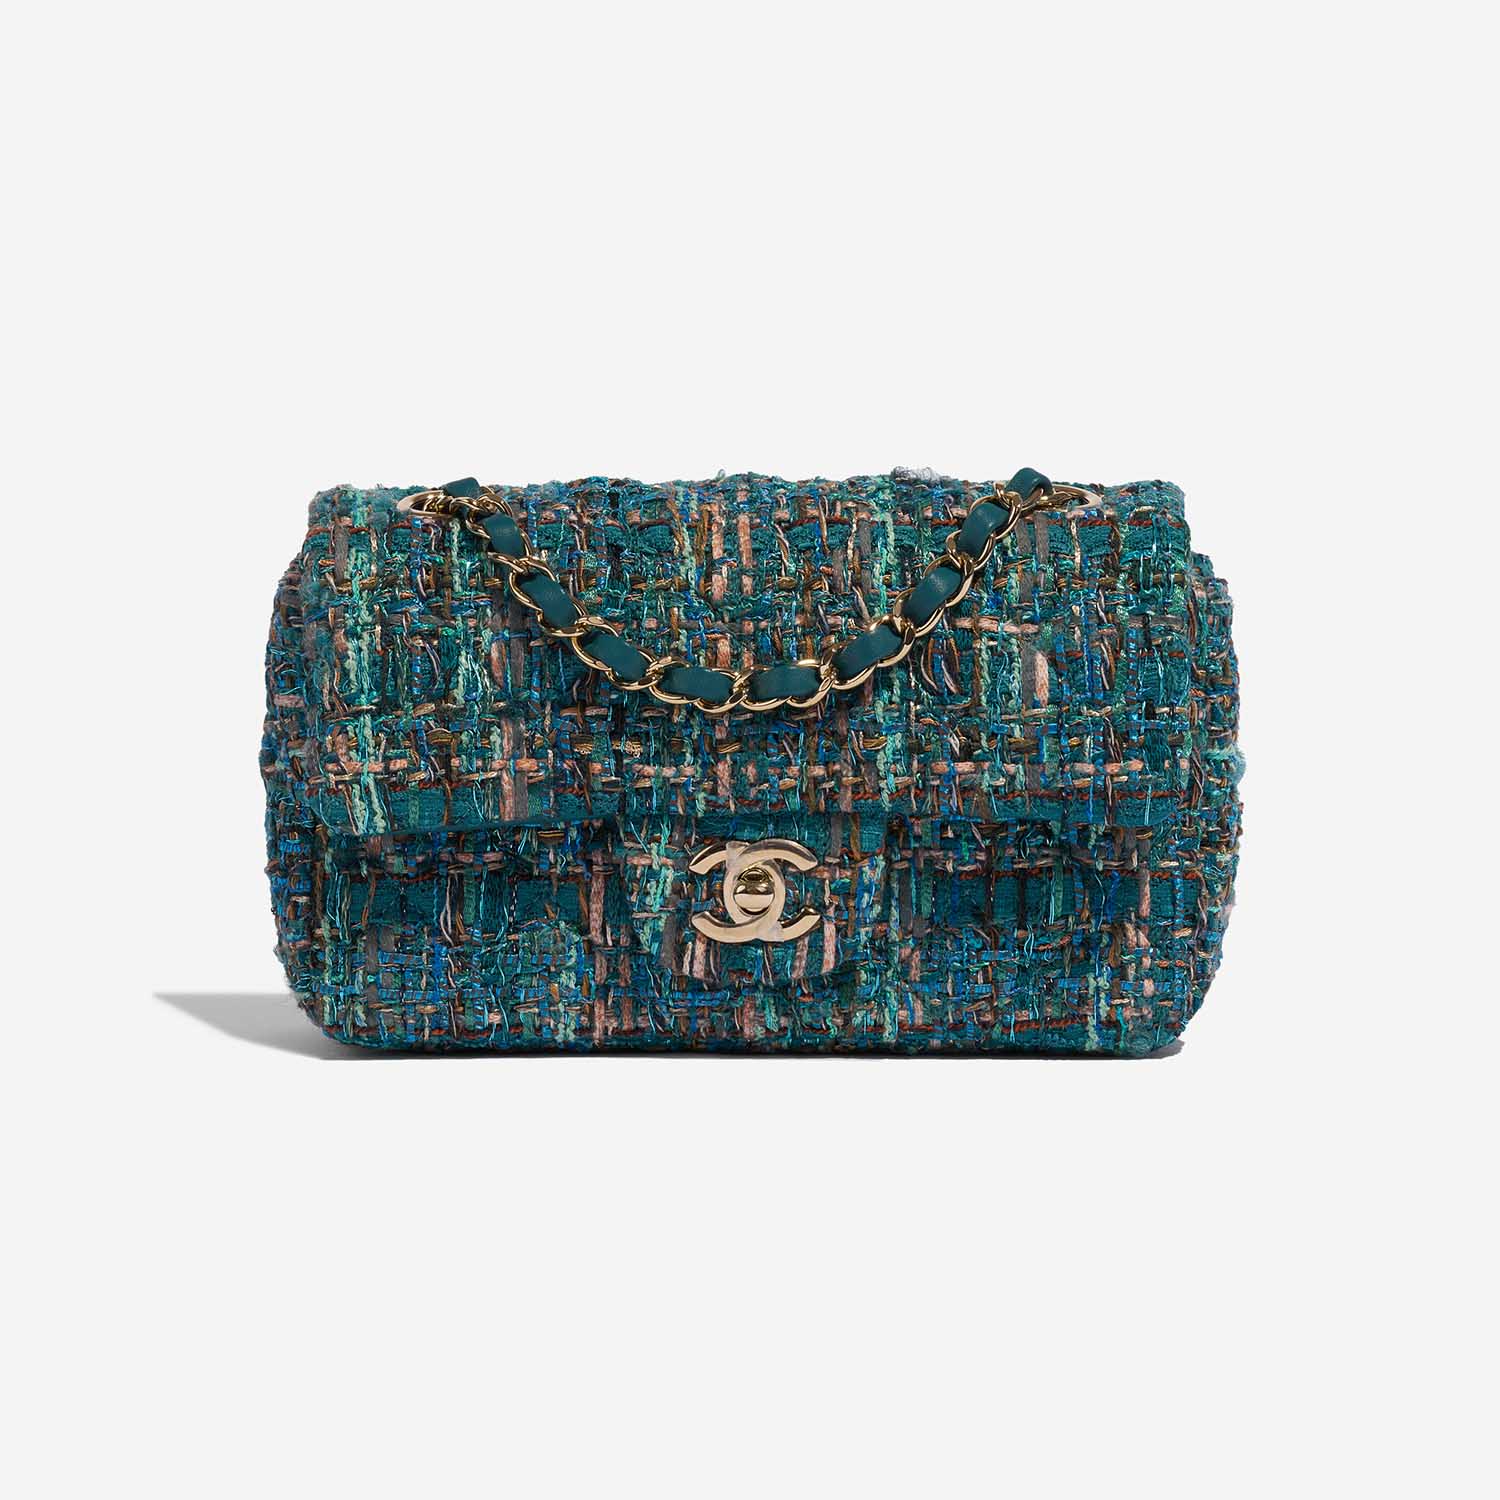 Chanel Green tweed flap bag - Still in fashion